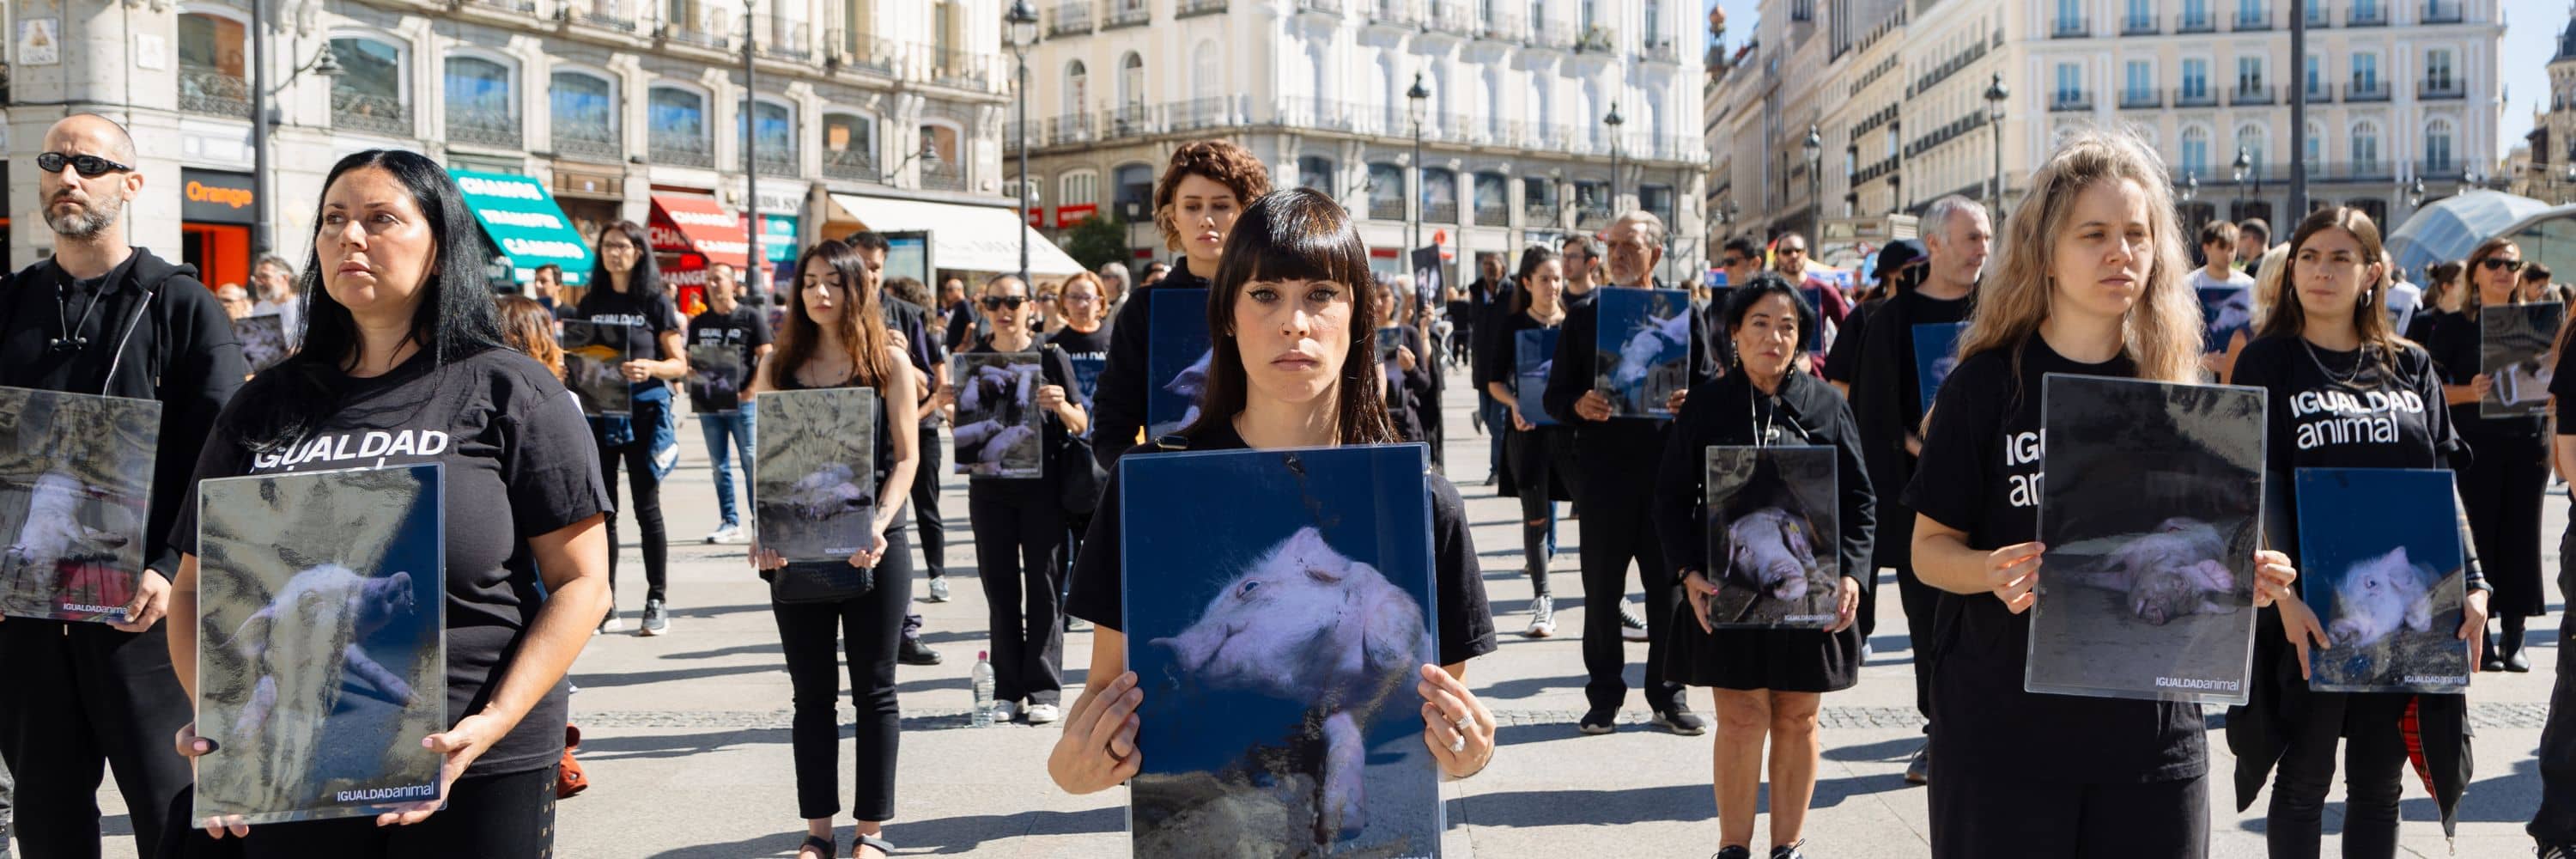 Activistas ante la Puerta del Sol en Madrid protesta contra la crueldad de las granjas porcinas.